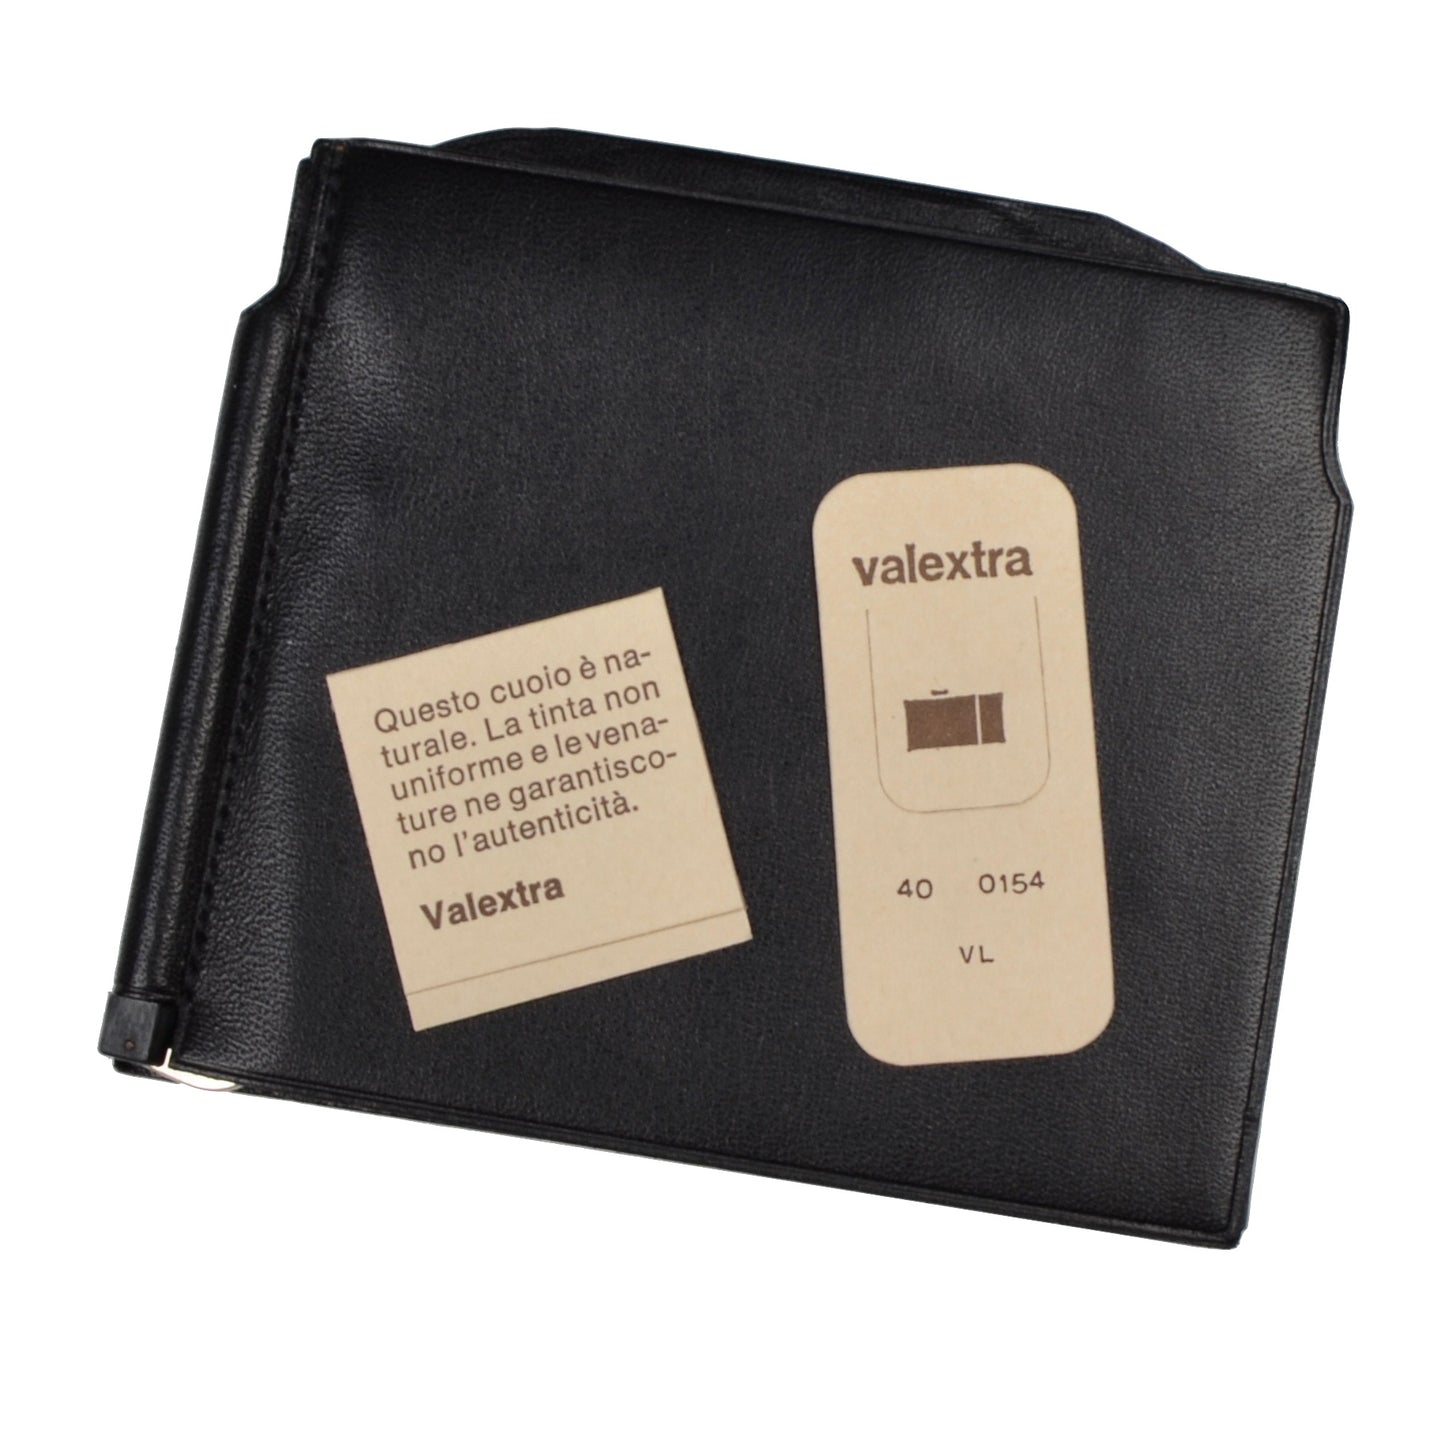 Valextra Milano Grip Spring Wallet - Black